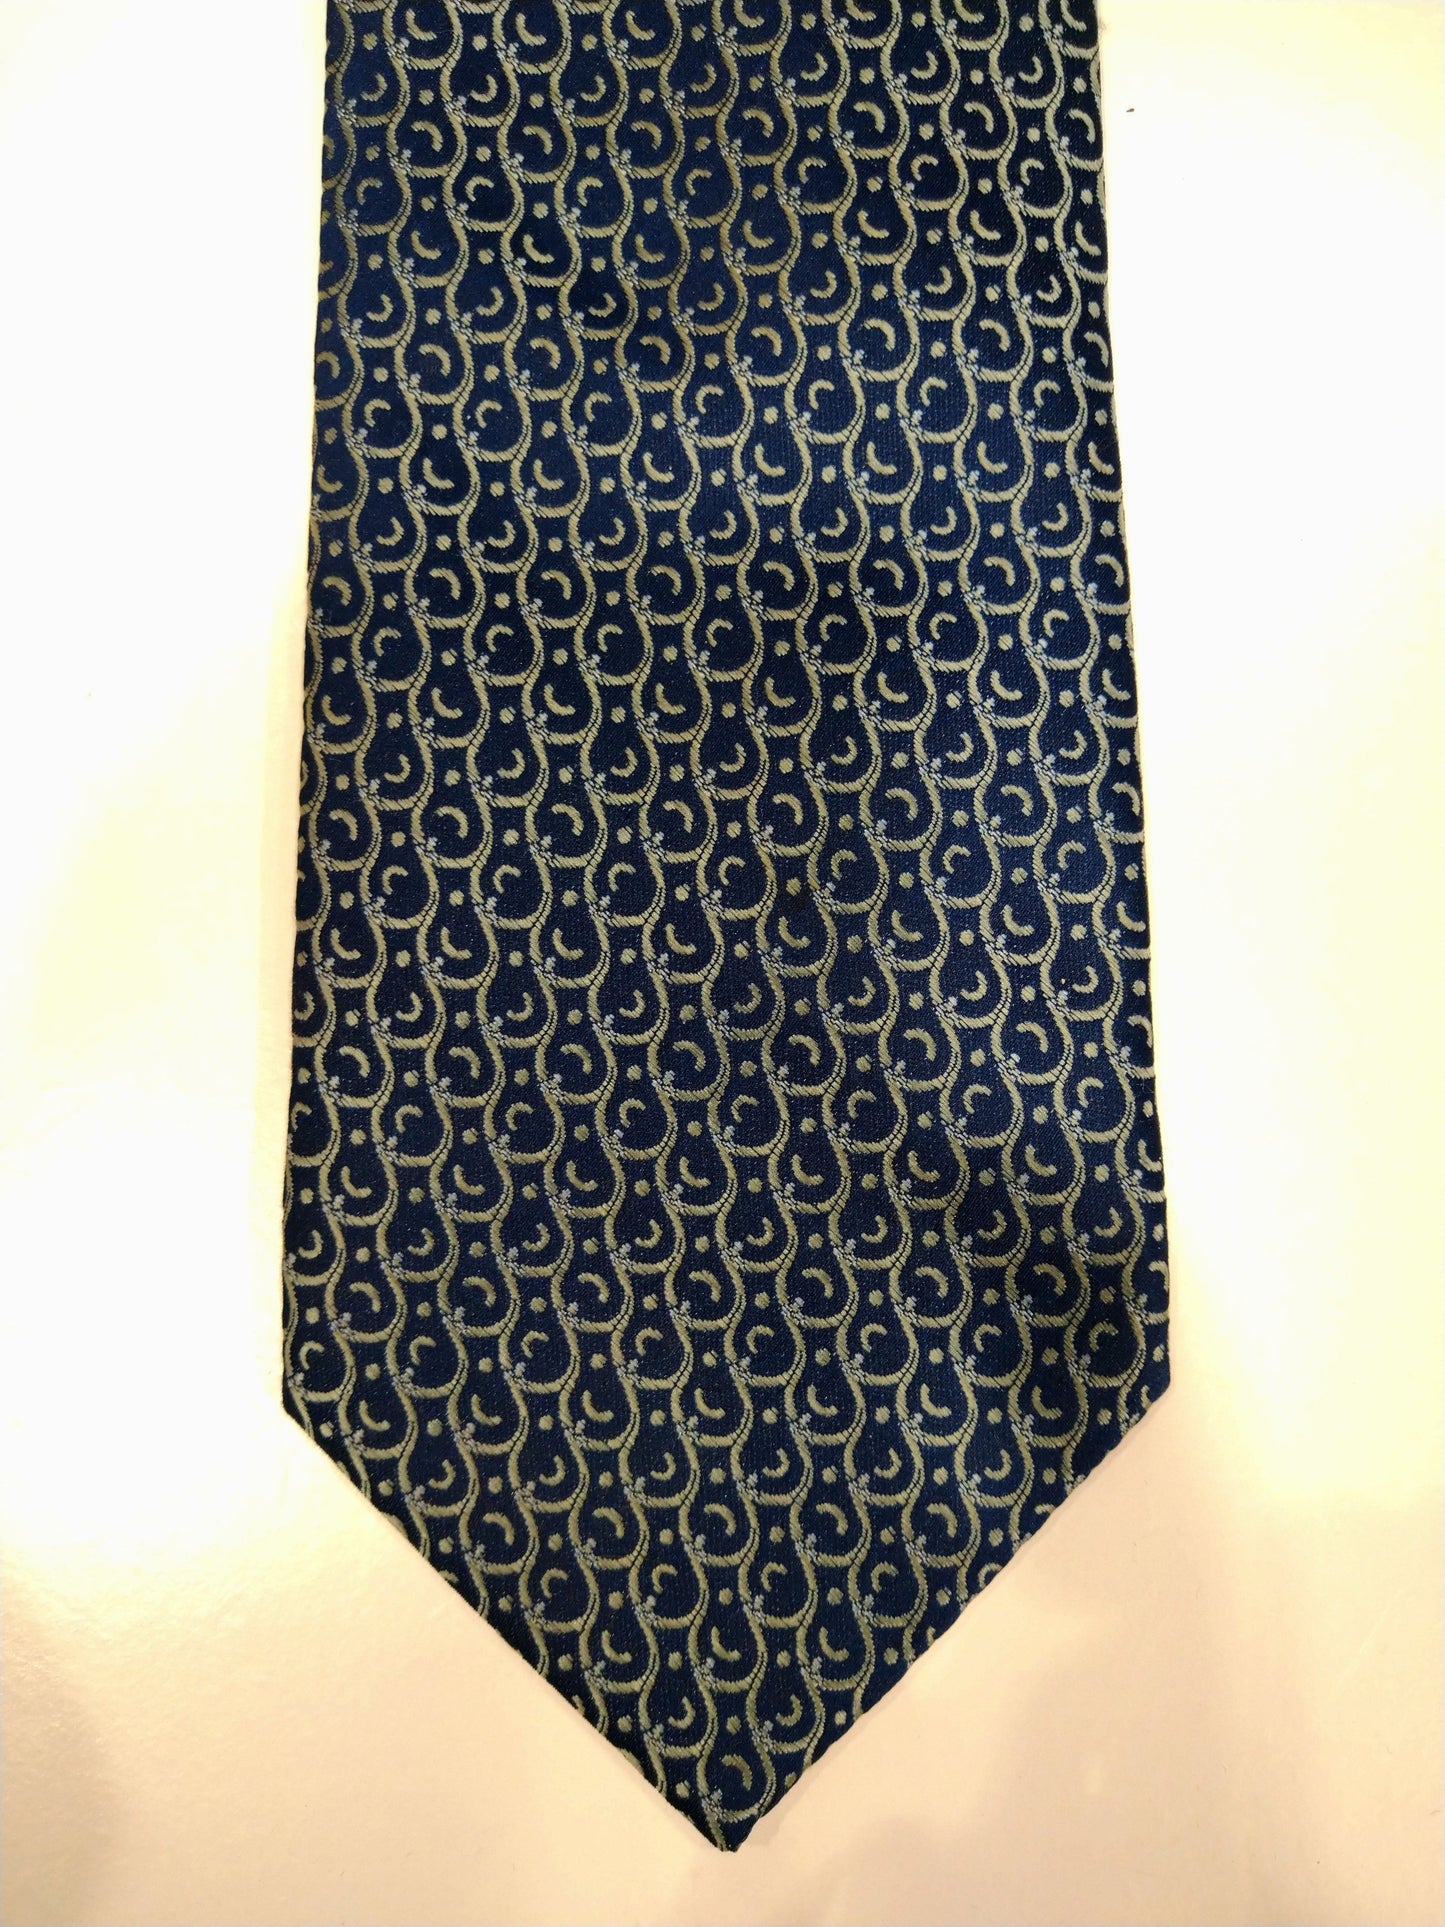 Vintage Rodos Silks hand made zijde stropdas. Blauw geel motief.